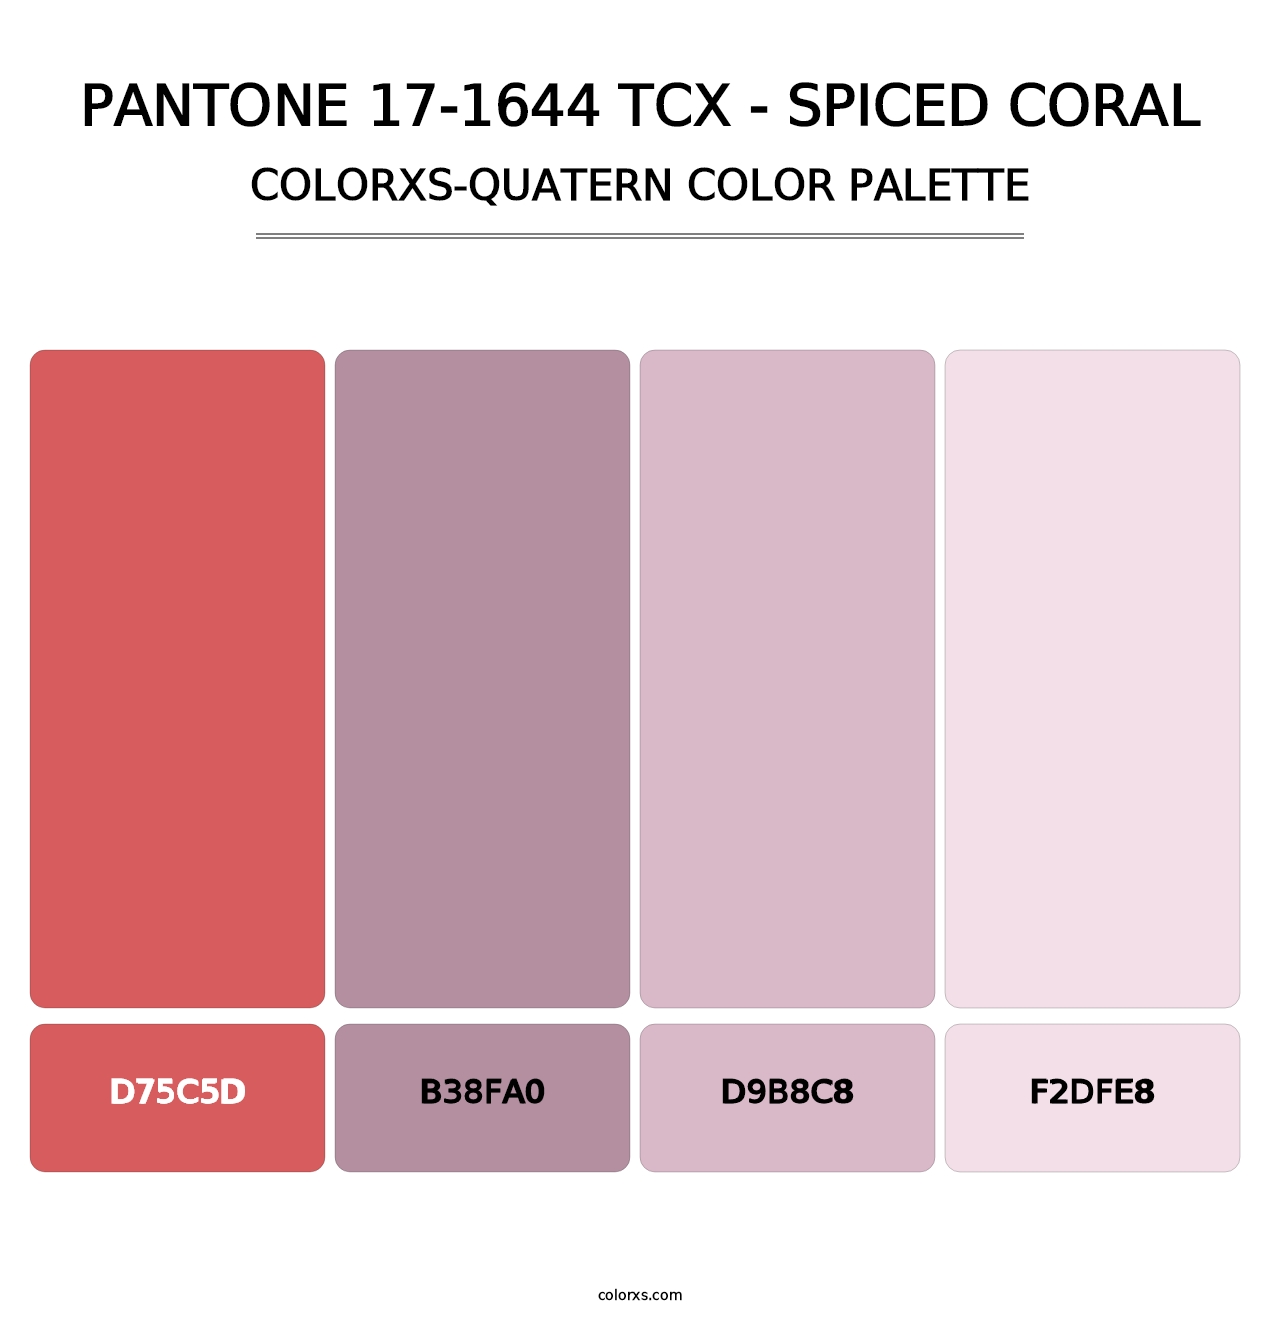 PANTONE 17-1644 TCX - Spiced Coral - Colorxs Quatern Palette